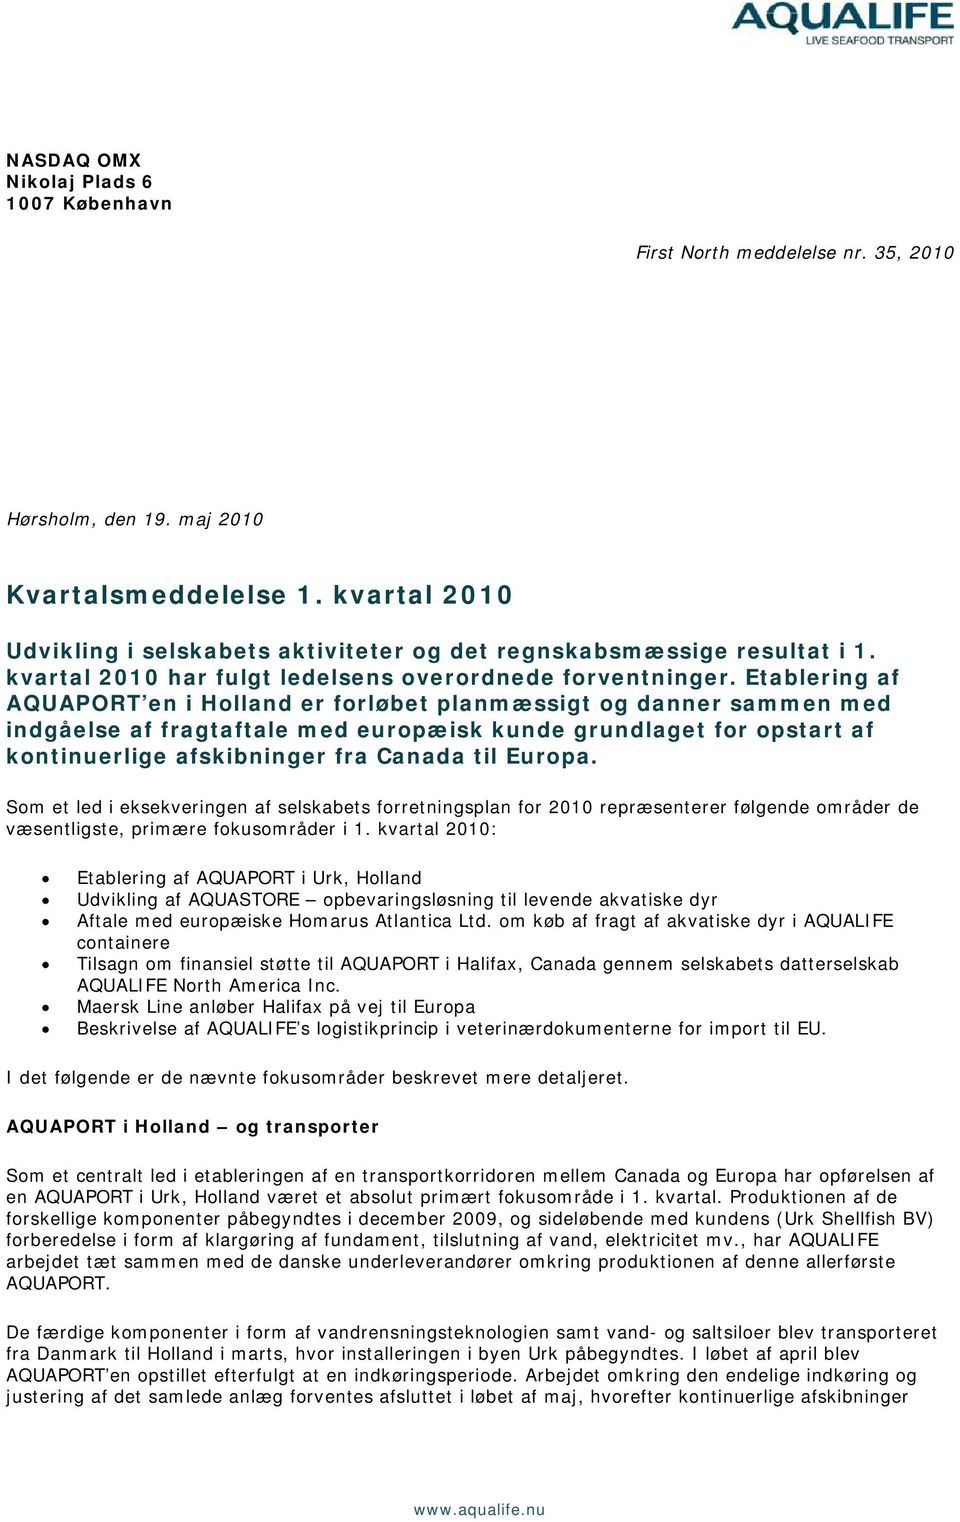 Etablering af AQUAPORT en i Holland er forløbet planmæssigt og danner sammen med indgåelse af fragtaftale med europæisk kunde grundlaget for opstart af kontinuerlige afskibninger fra Canada til